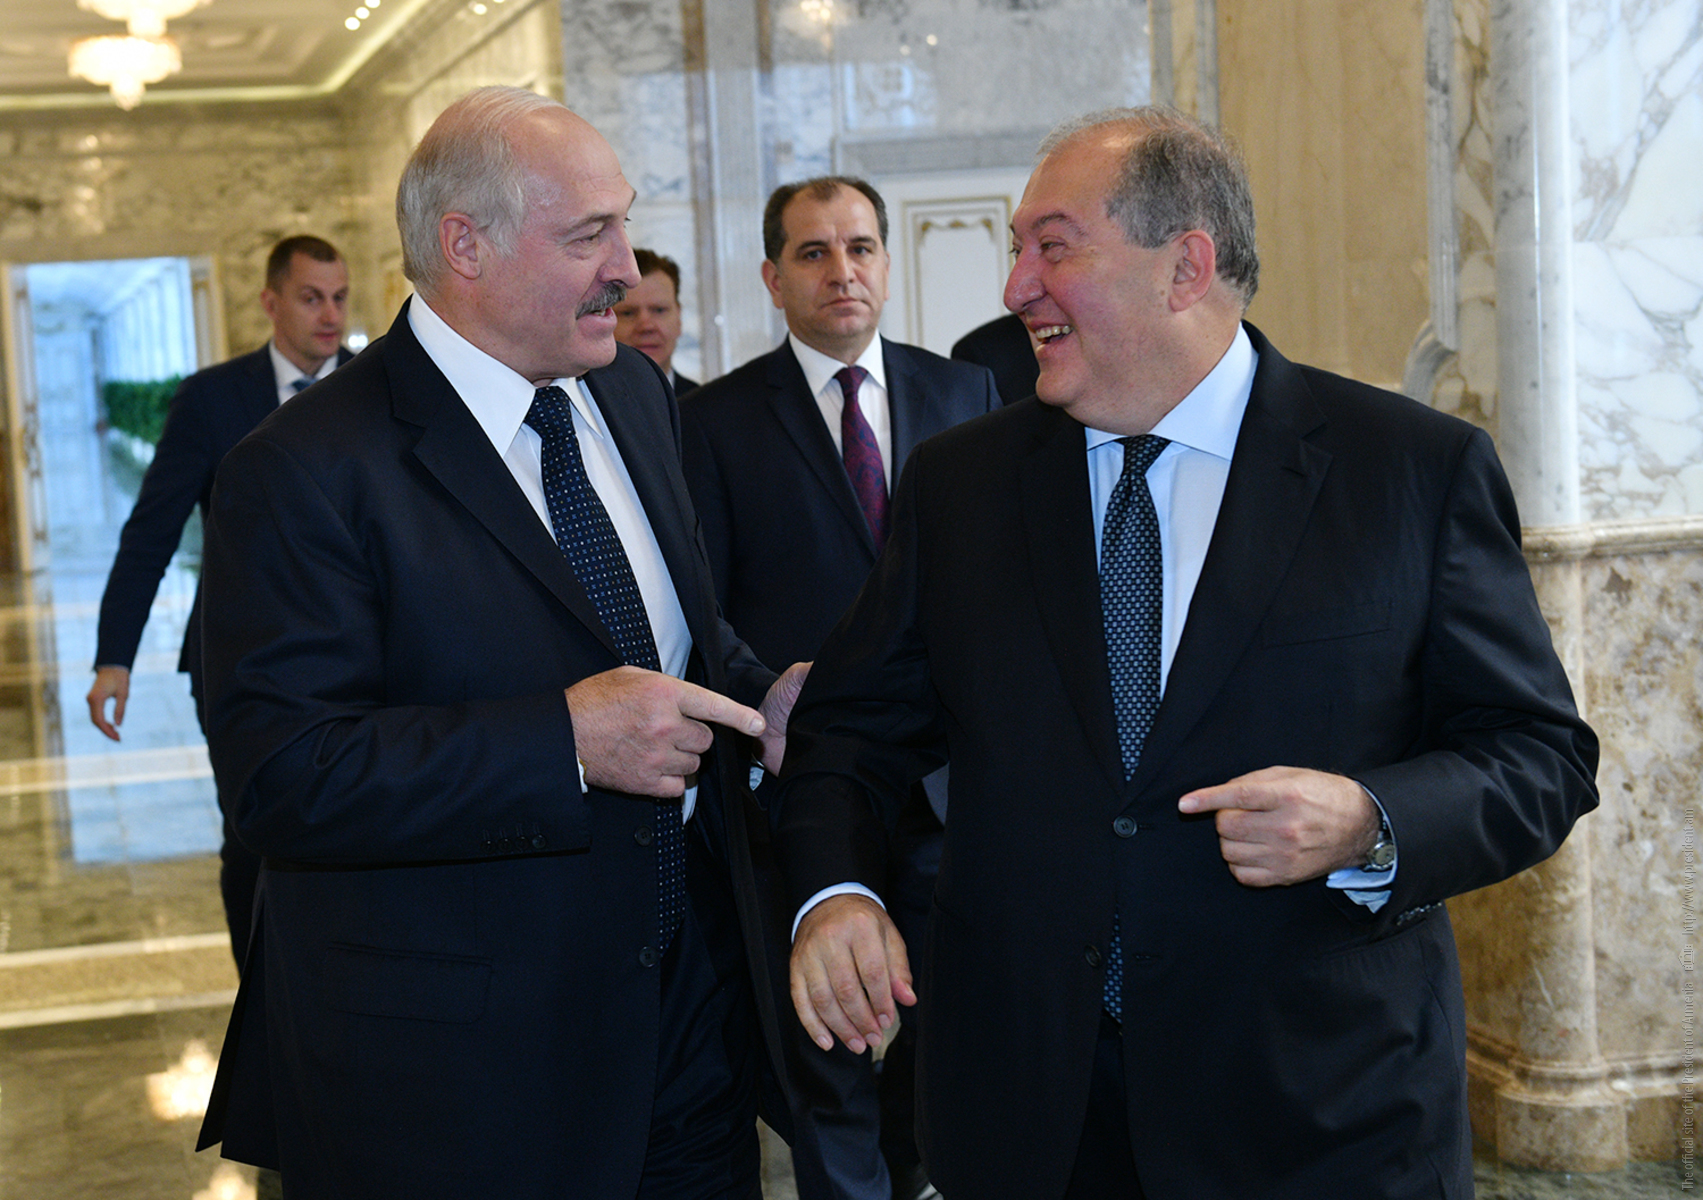 Մենք միշտ պատրաստ ենք ձեր առաջ բացելու դռները․ կայացել է Հայաստանի նախագահ Արմեն Սարգսյանի և Բելառուսի նախագահ Ալեքսանդր Լուկաշենկոյի հանդիպումը